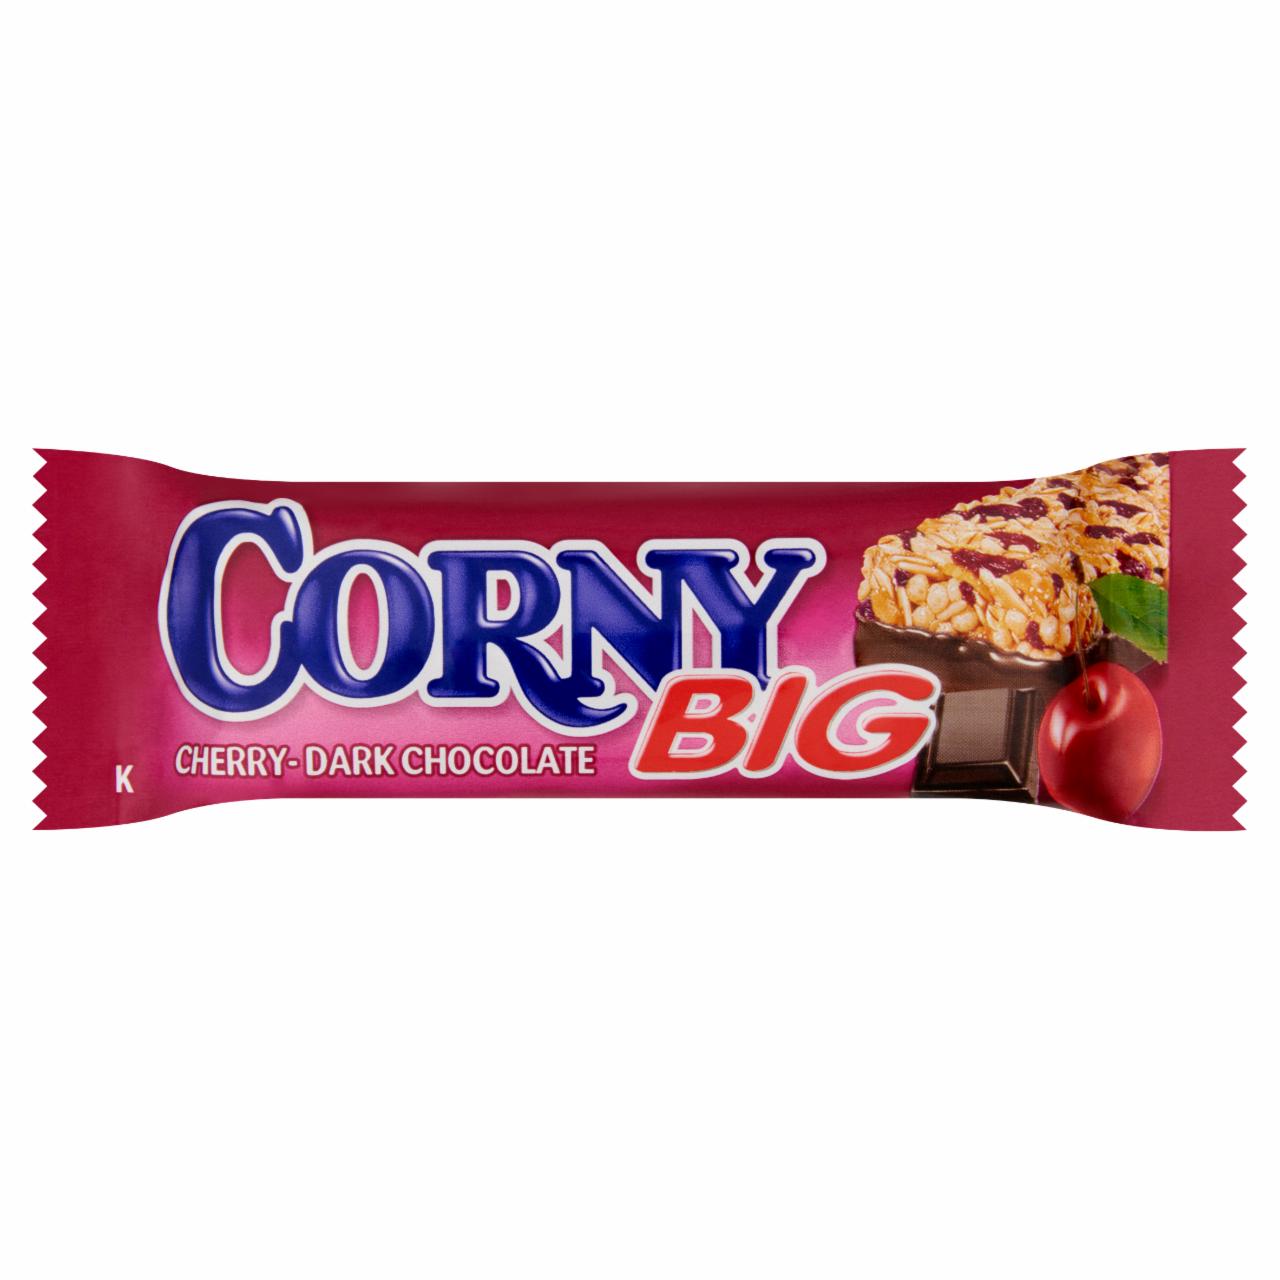 Képek - Corny Big meggyes müzliszelet feketecsokoládéba mártva 50 g